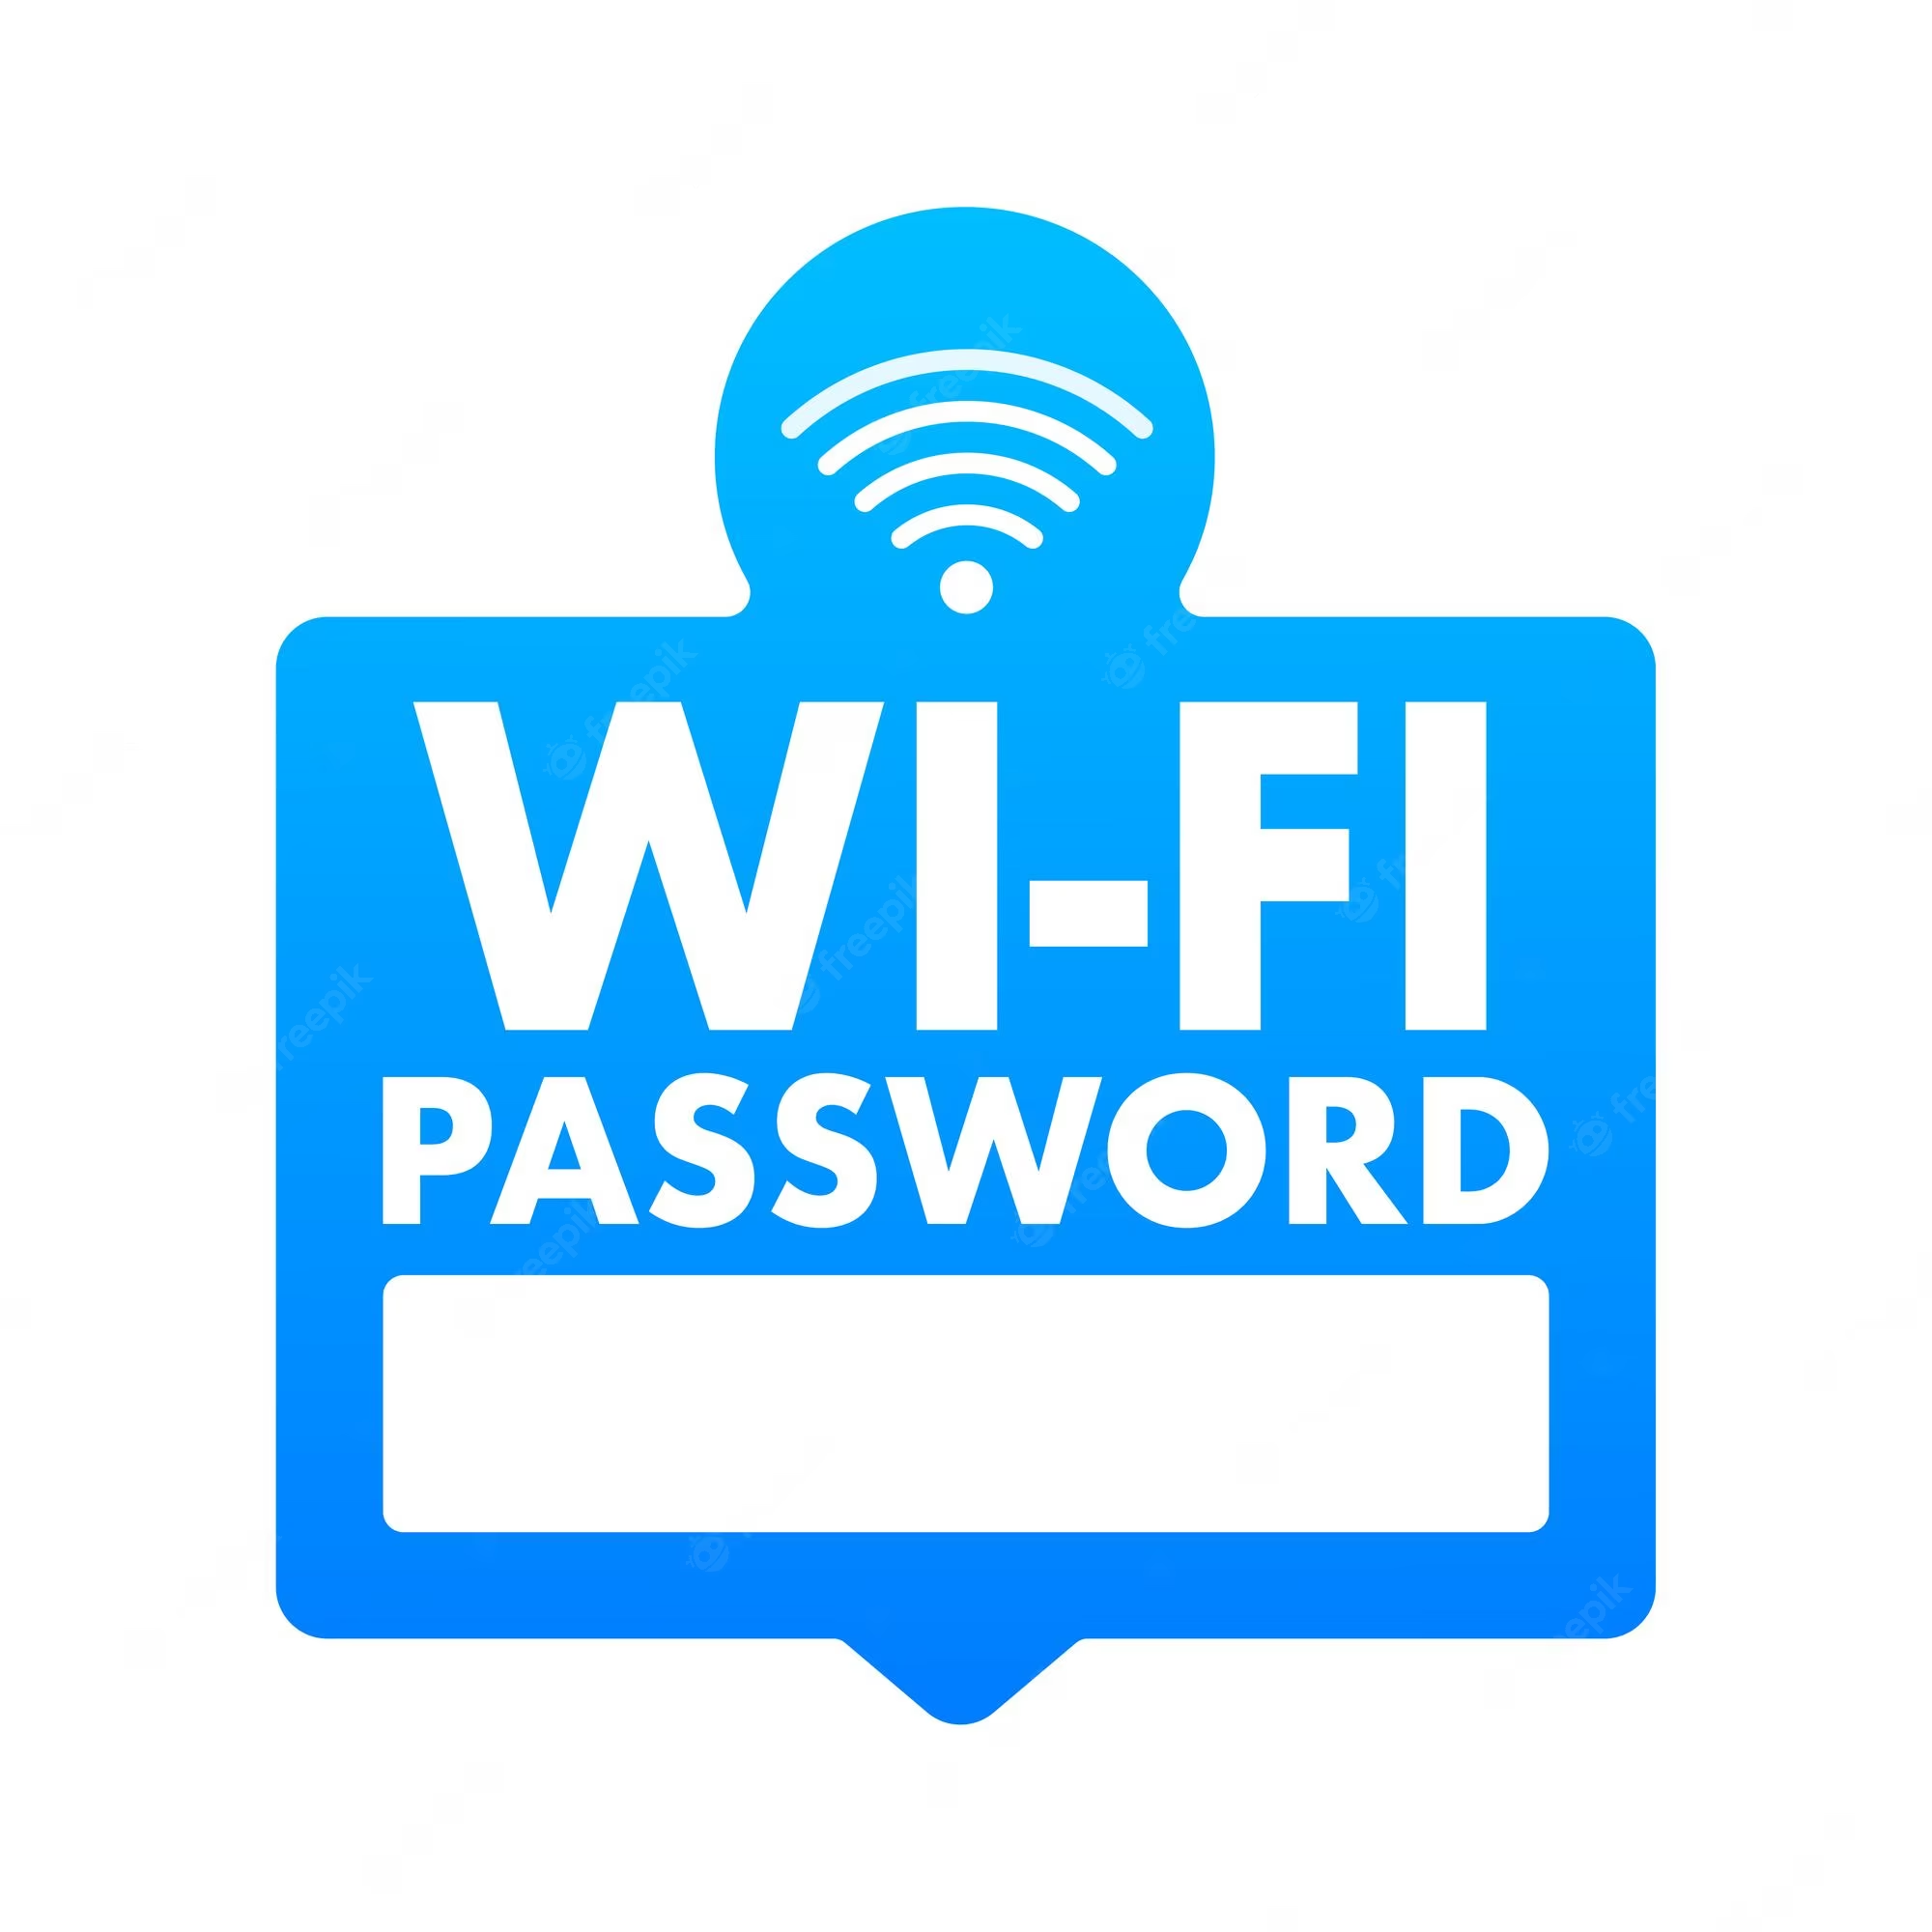 如何在 Linux、Windows 和 Mac 上查找 WiFi 密码？